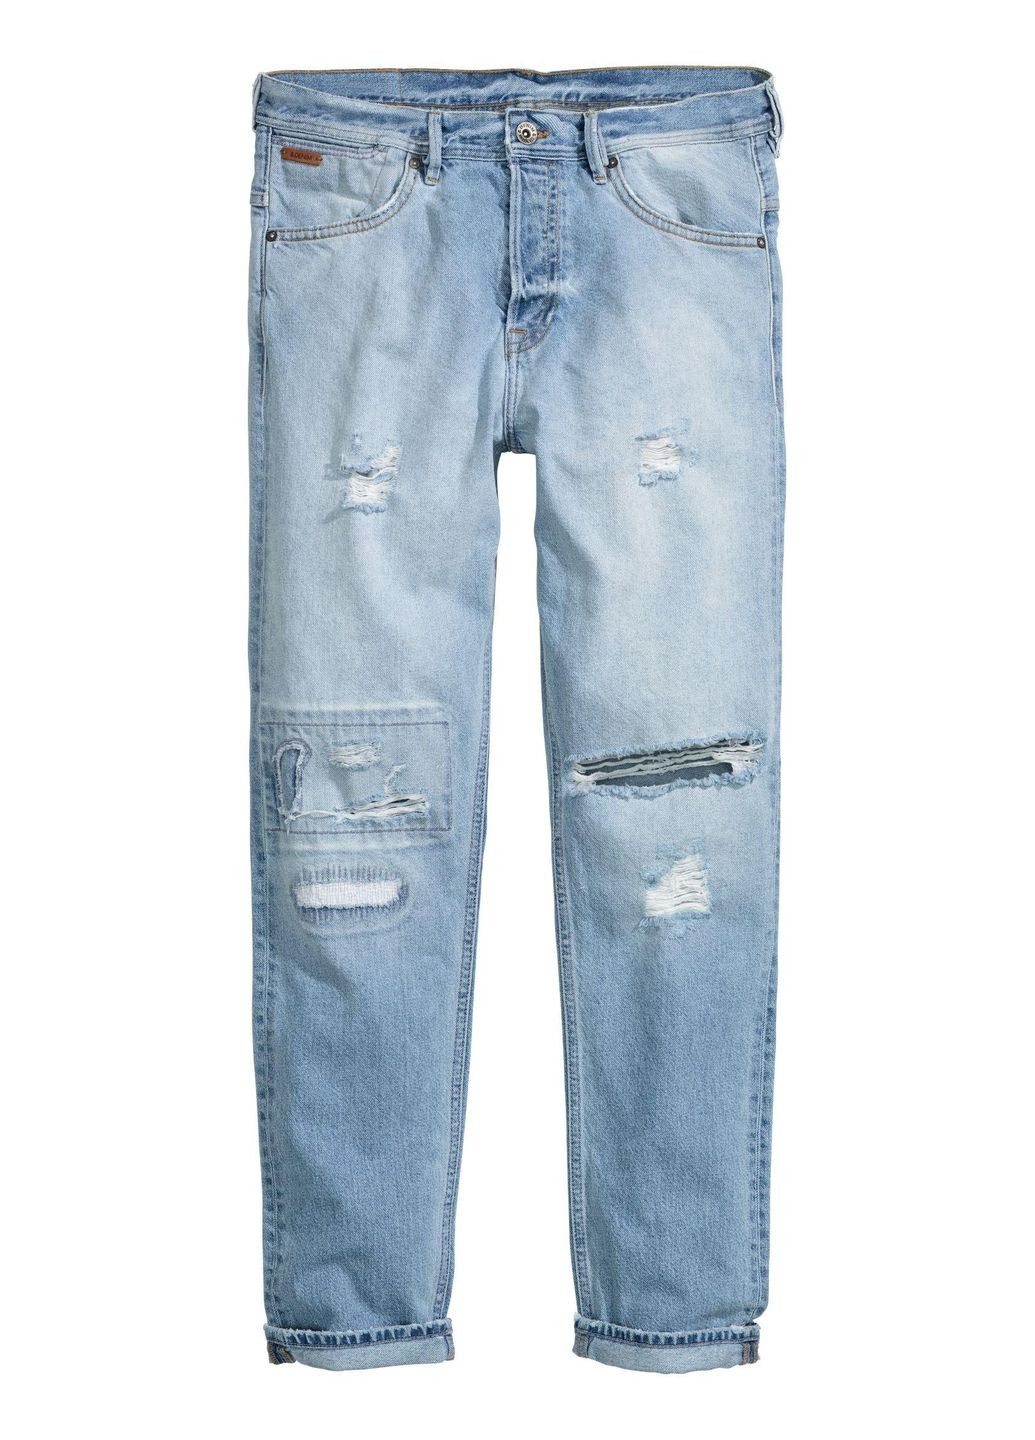 Голубые демисезонные джинсы taper hm0051m H&M